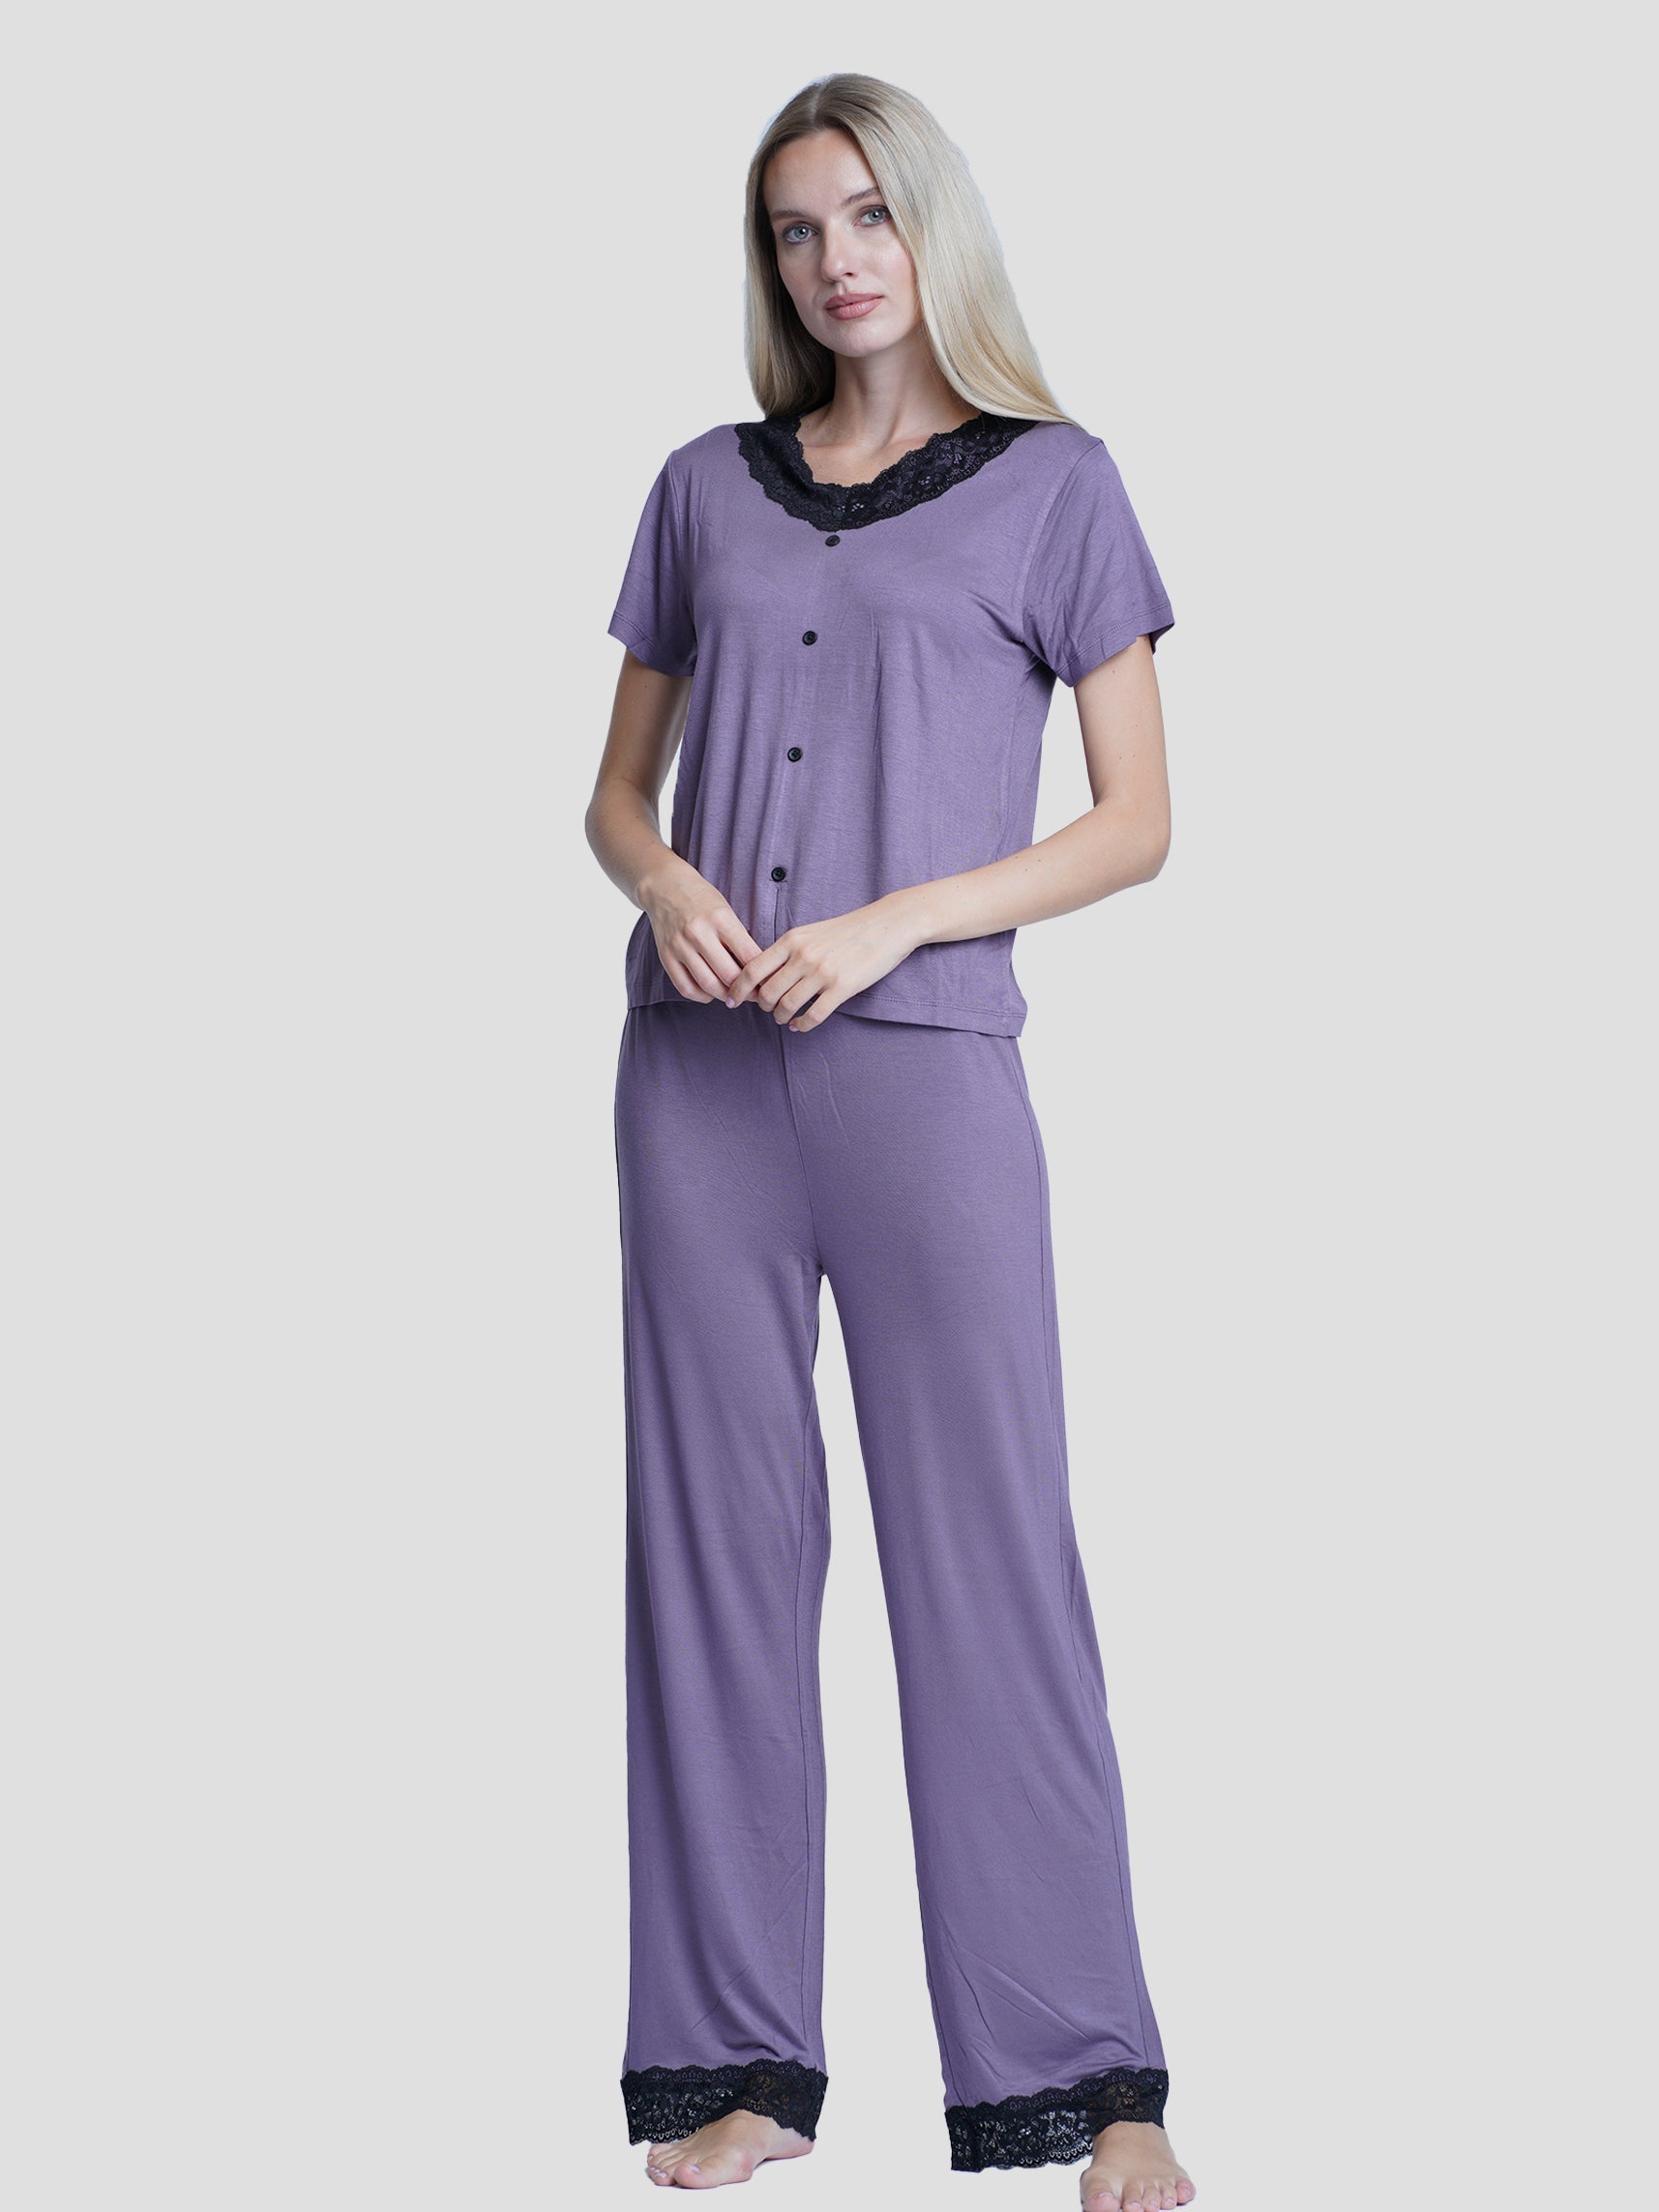 Women sleepwear Set Contrast Lace - inteblu